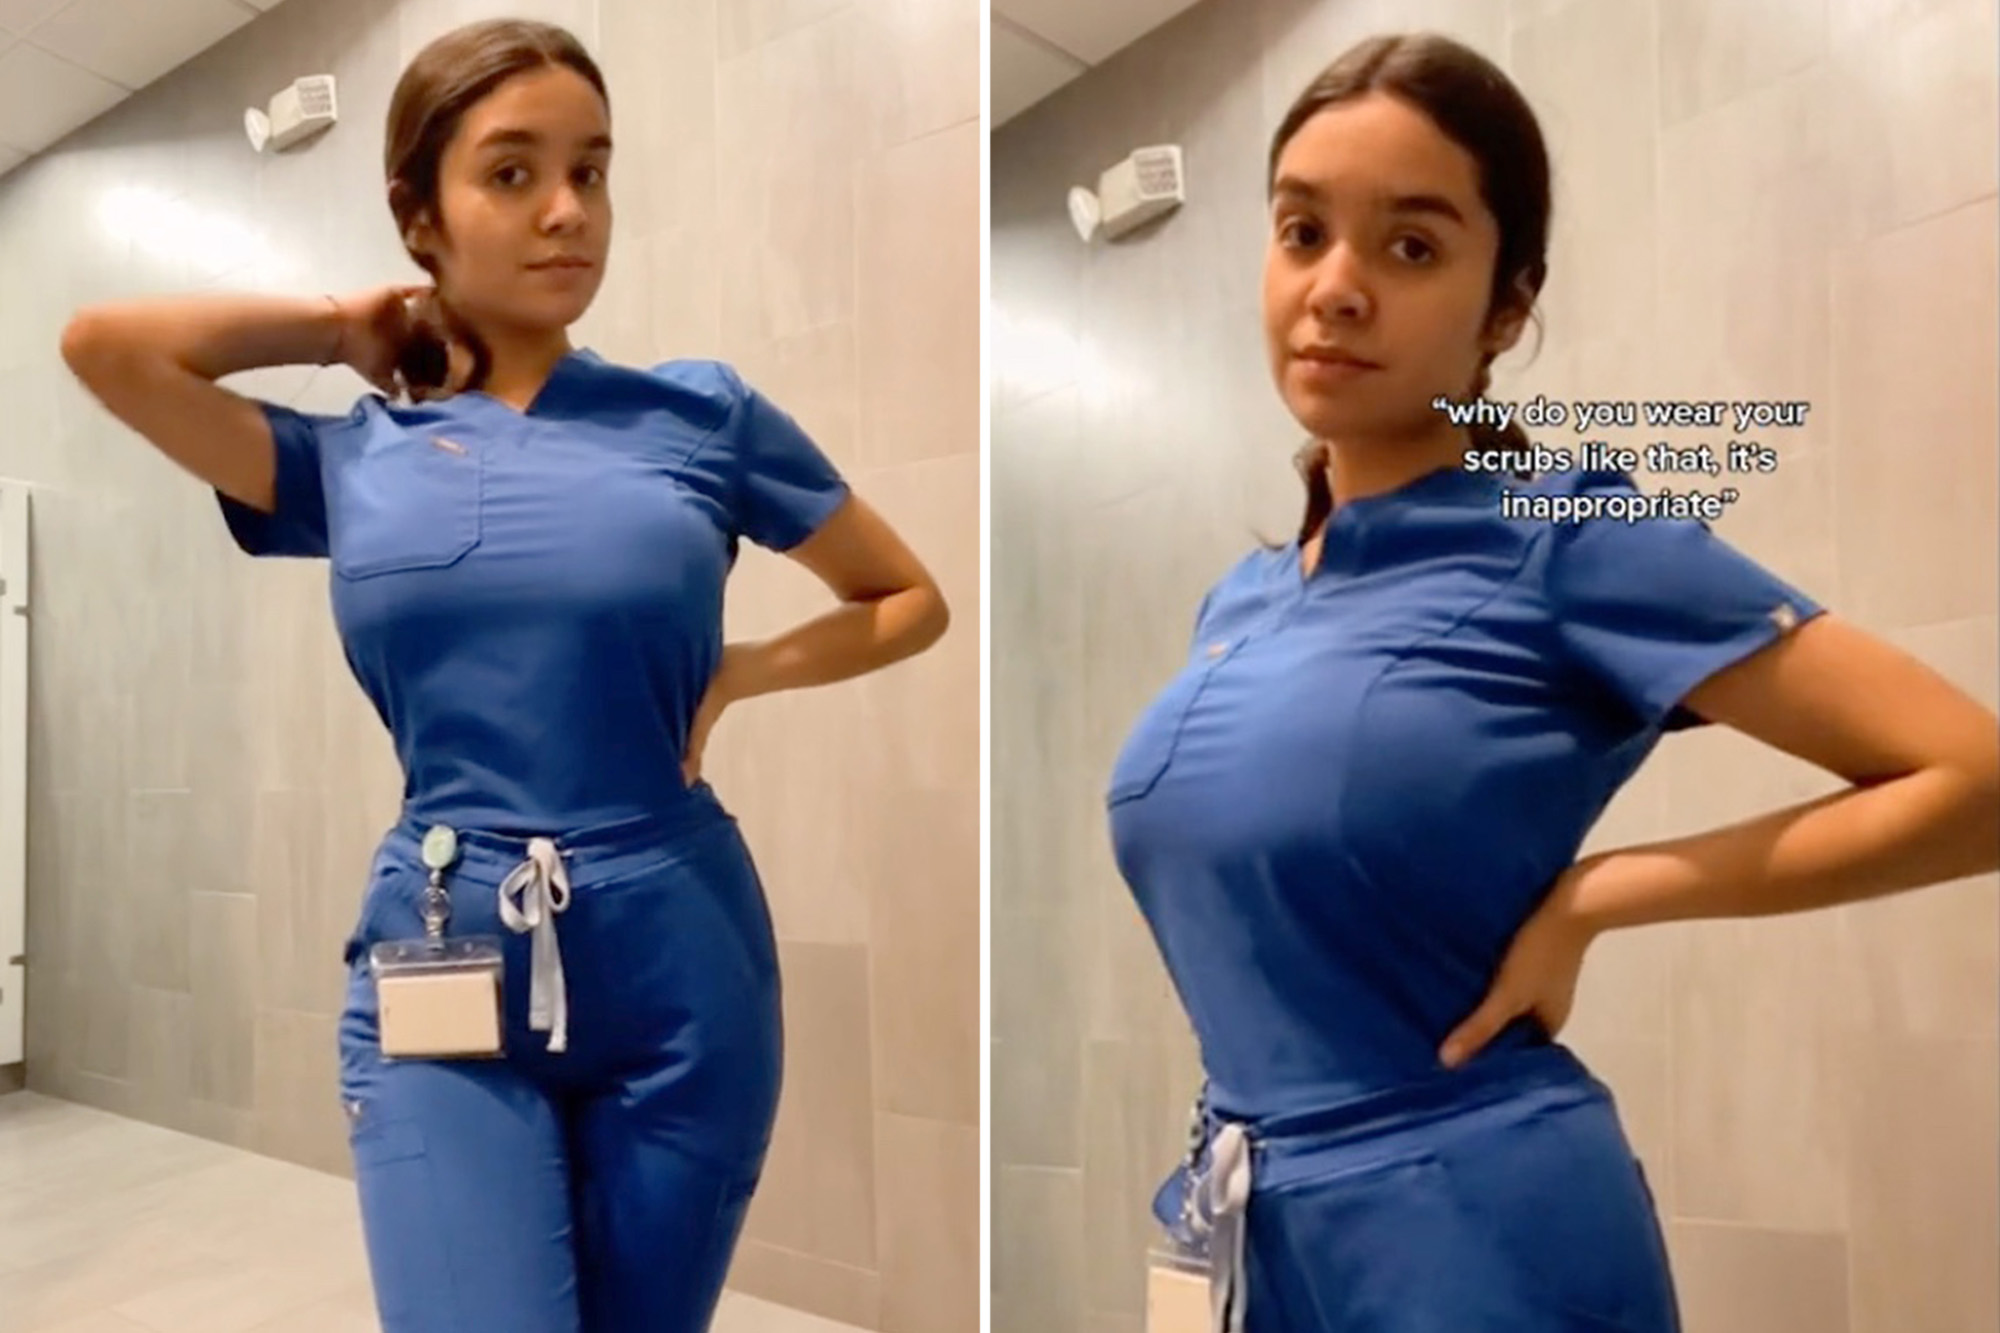 anita godbole share hot nurses in scrubs photos